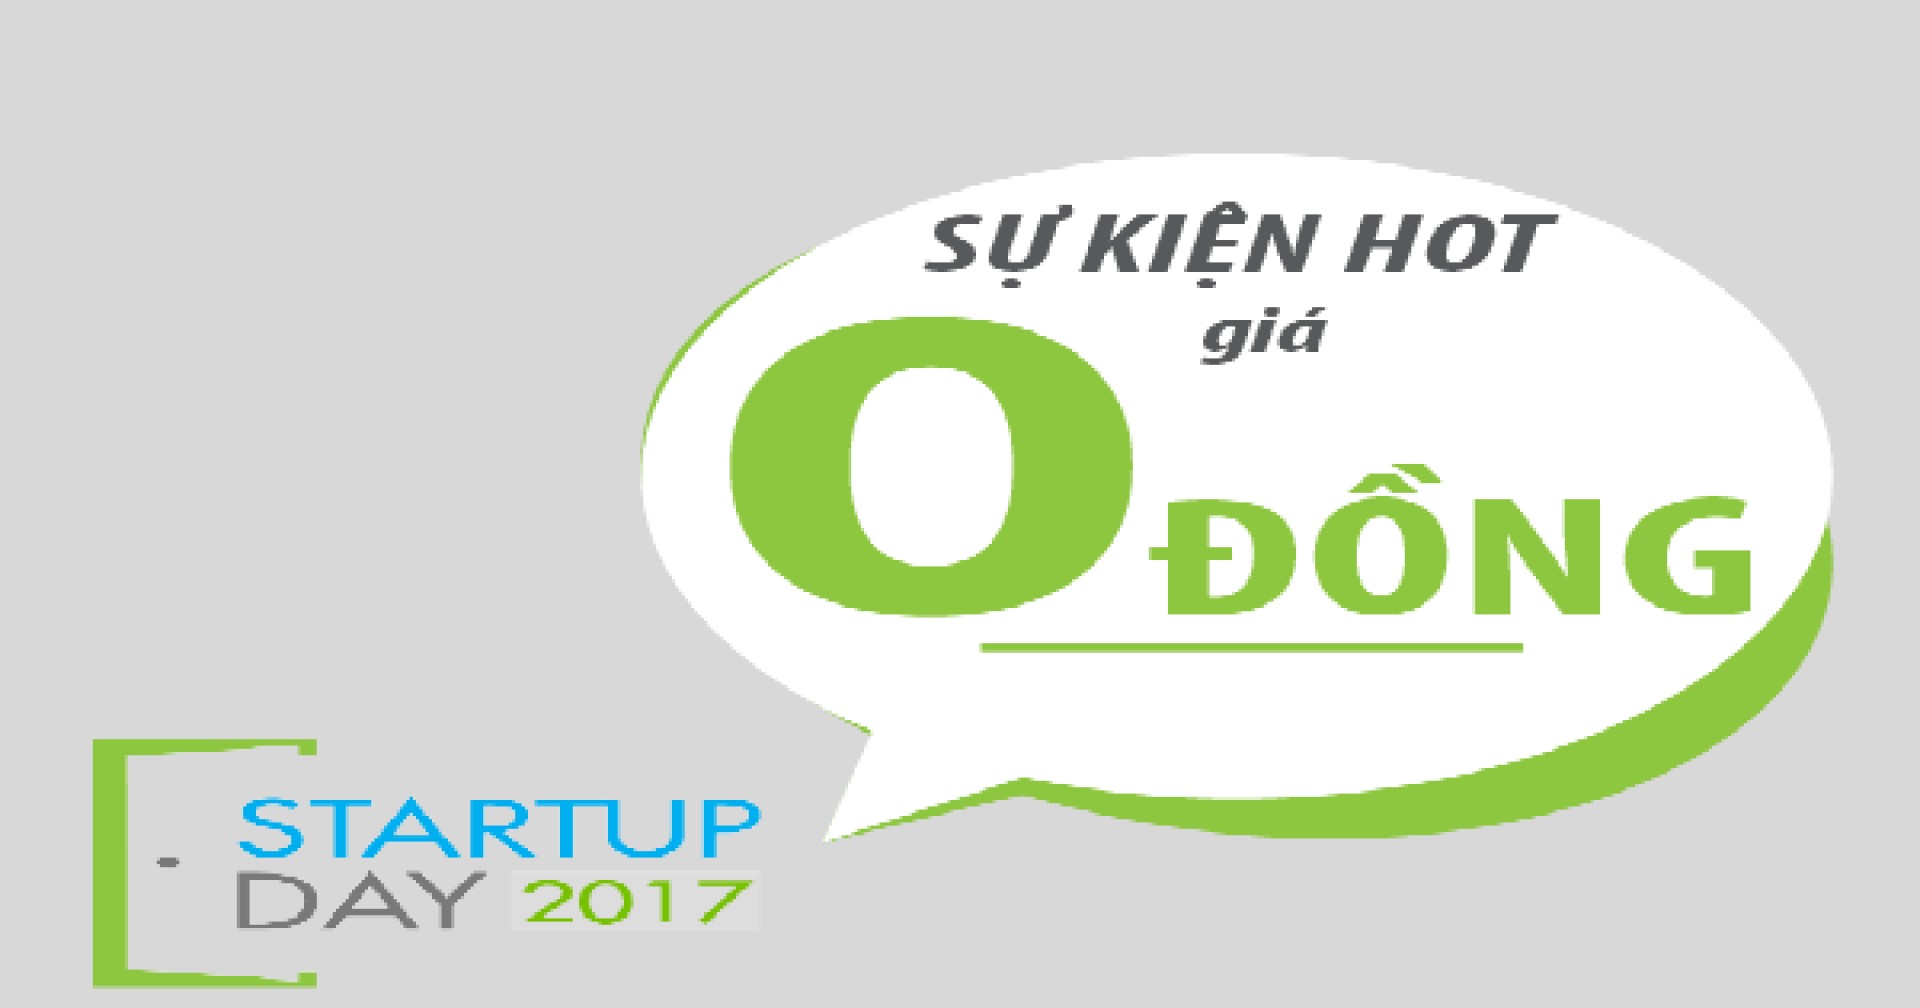 Startup Day 2017 - sự kiện HOT nhất cộng đồng startup với giá 0đ